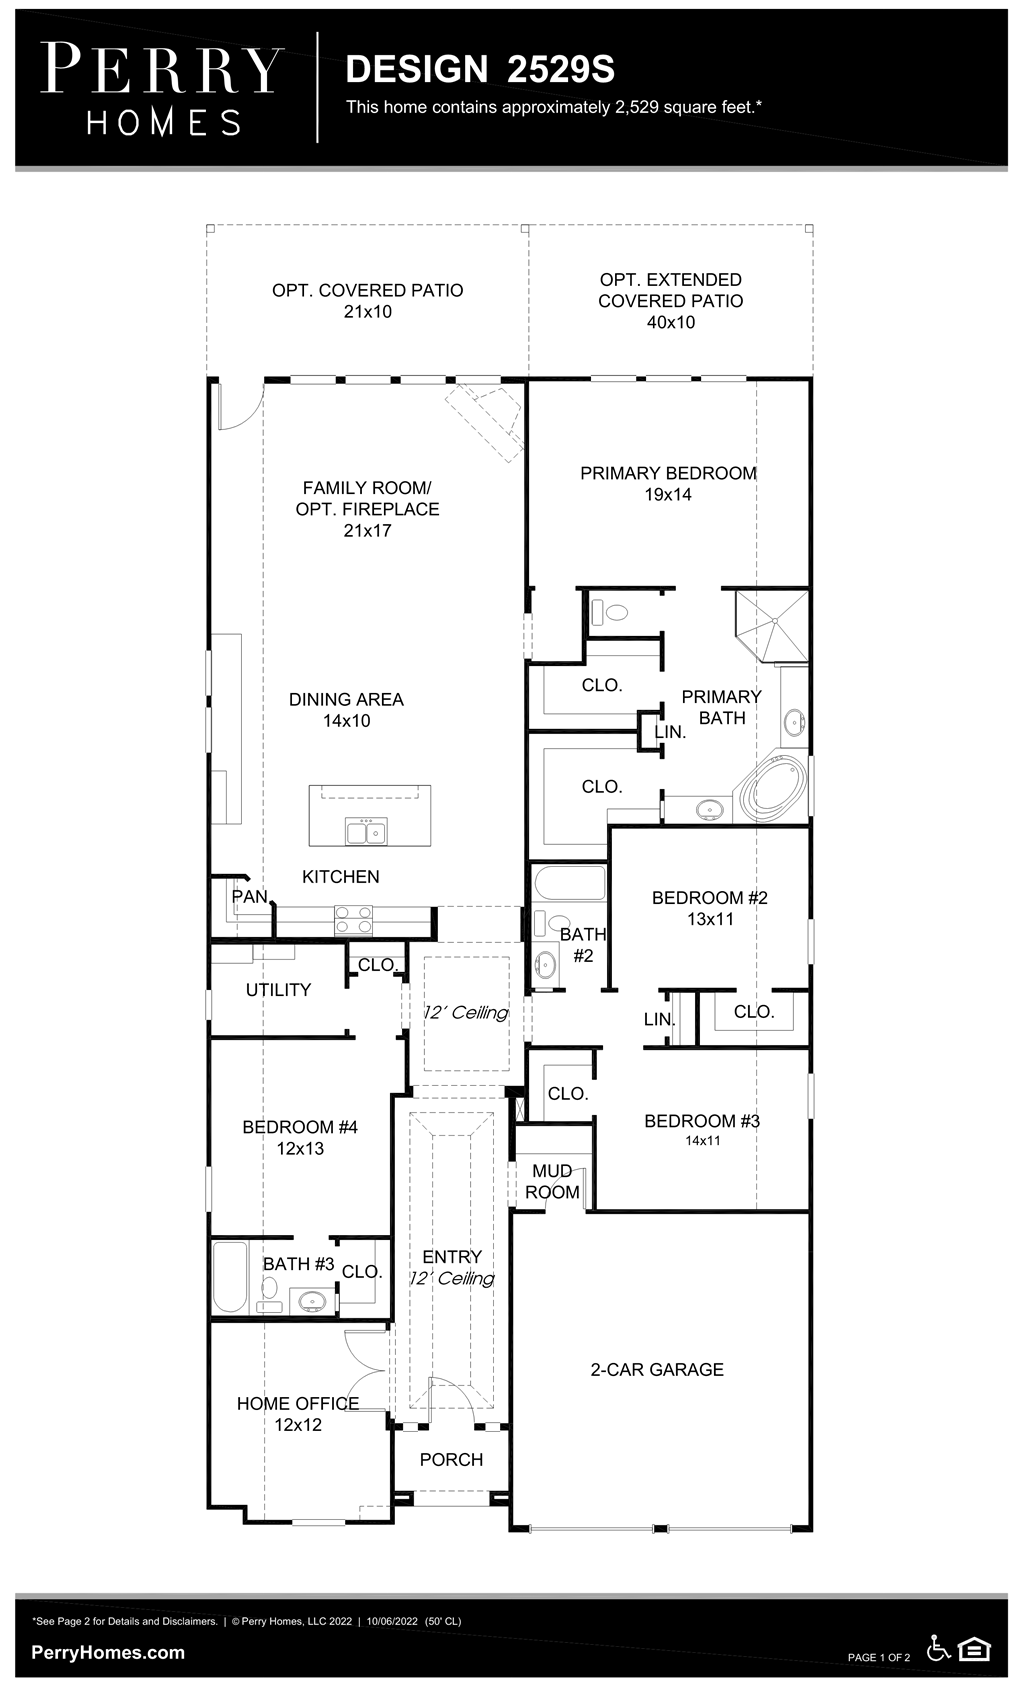 Floor Plan for 2529S